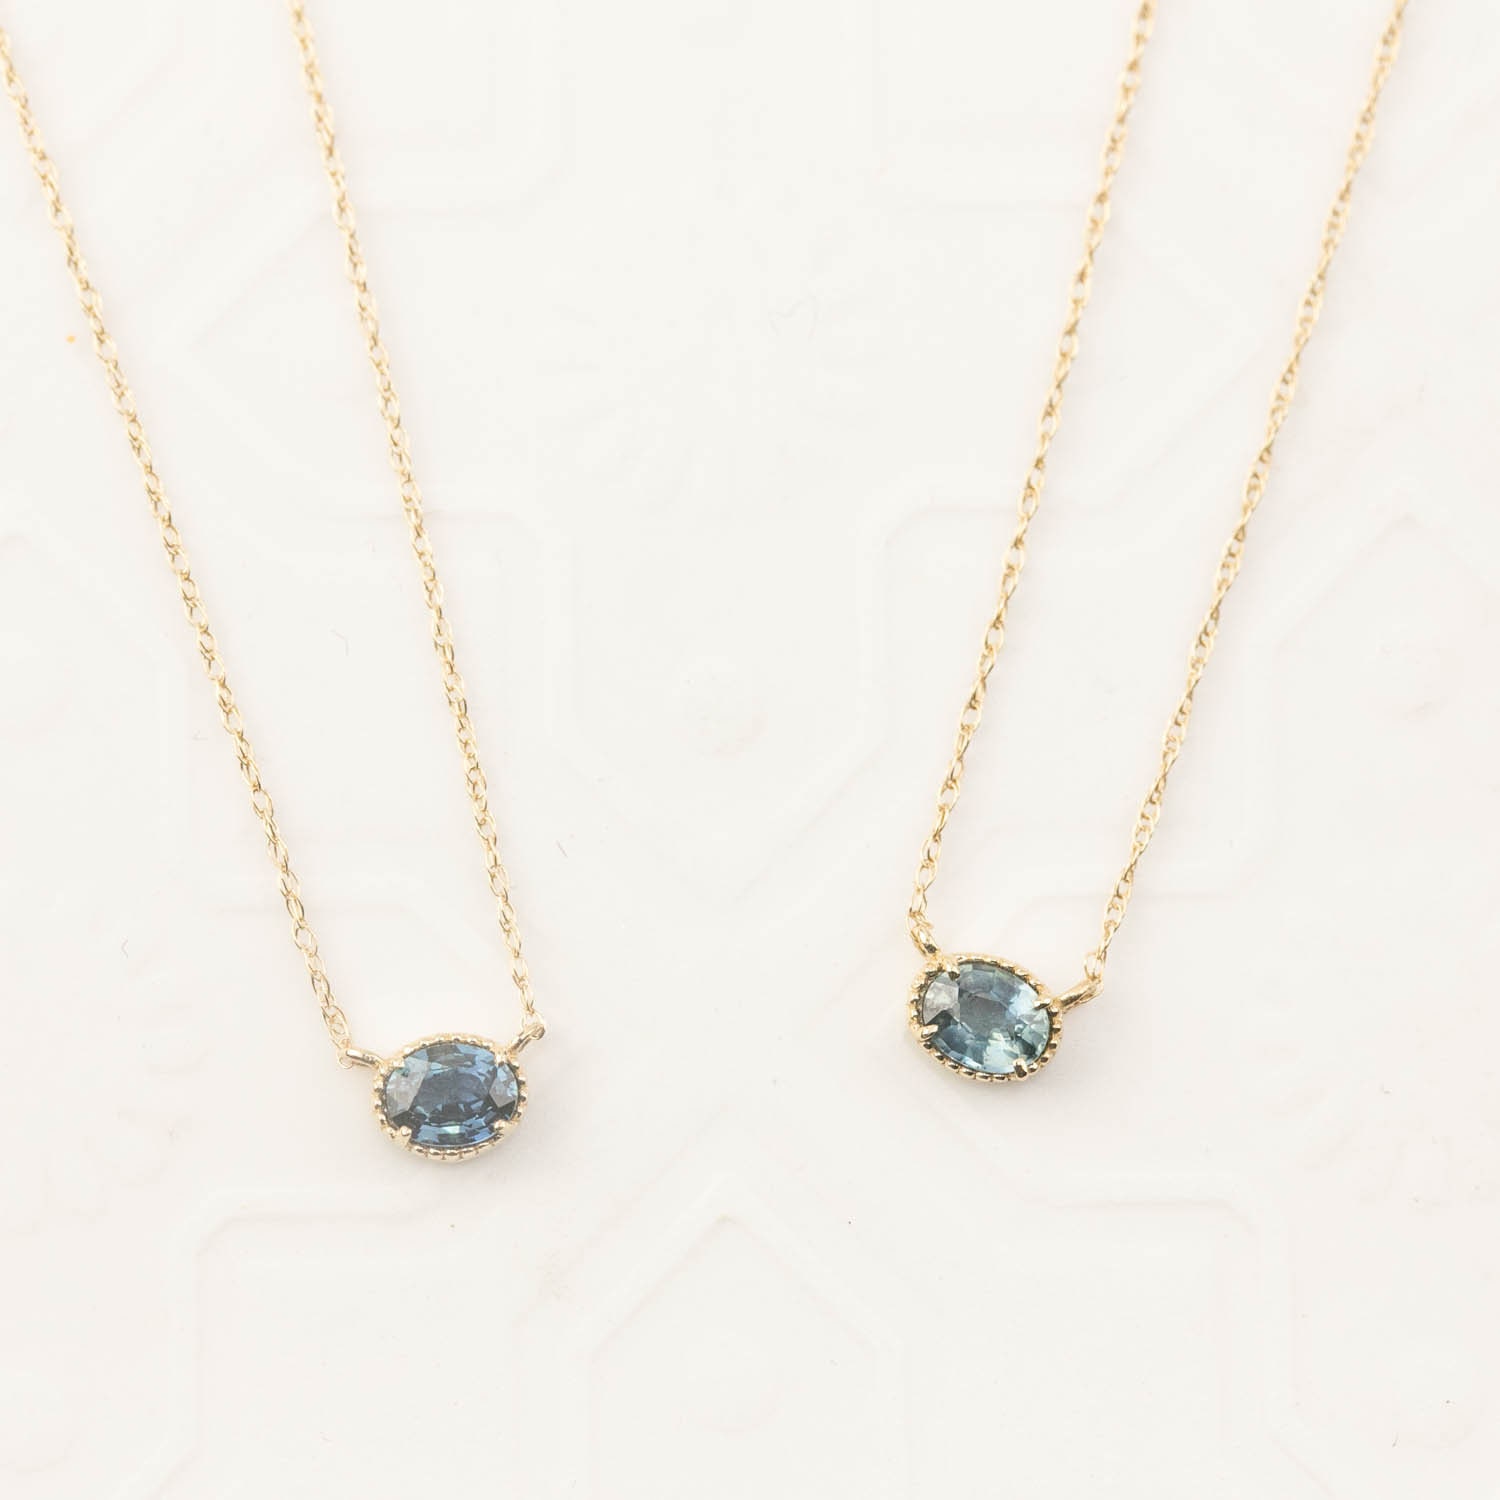 Oval Natürlicher Saphir Solitär Halskette, Blau Grüner Saphir, September Birthstone Schmuck 14K Gold von EnveroJewelry